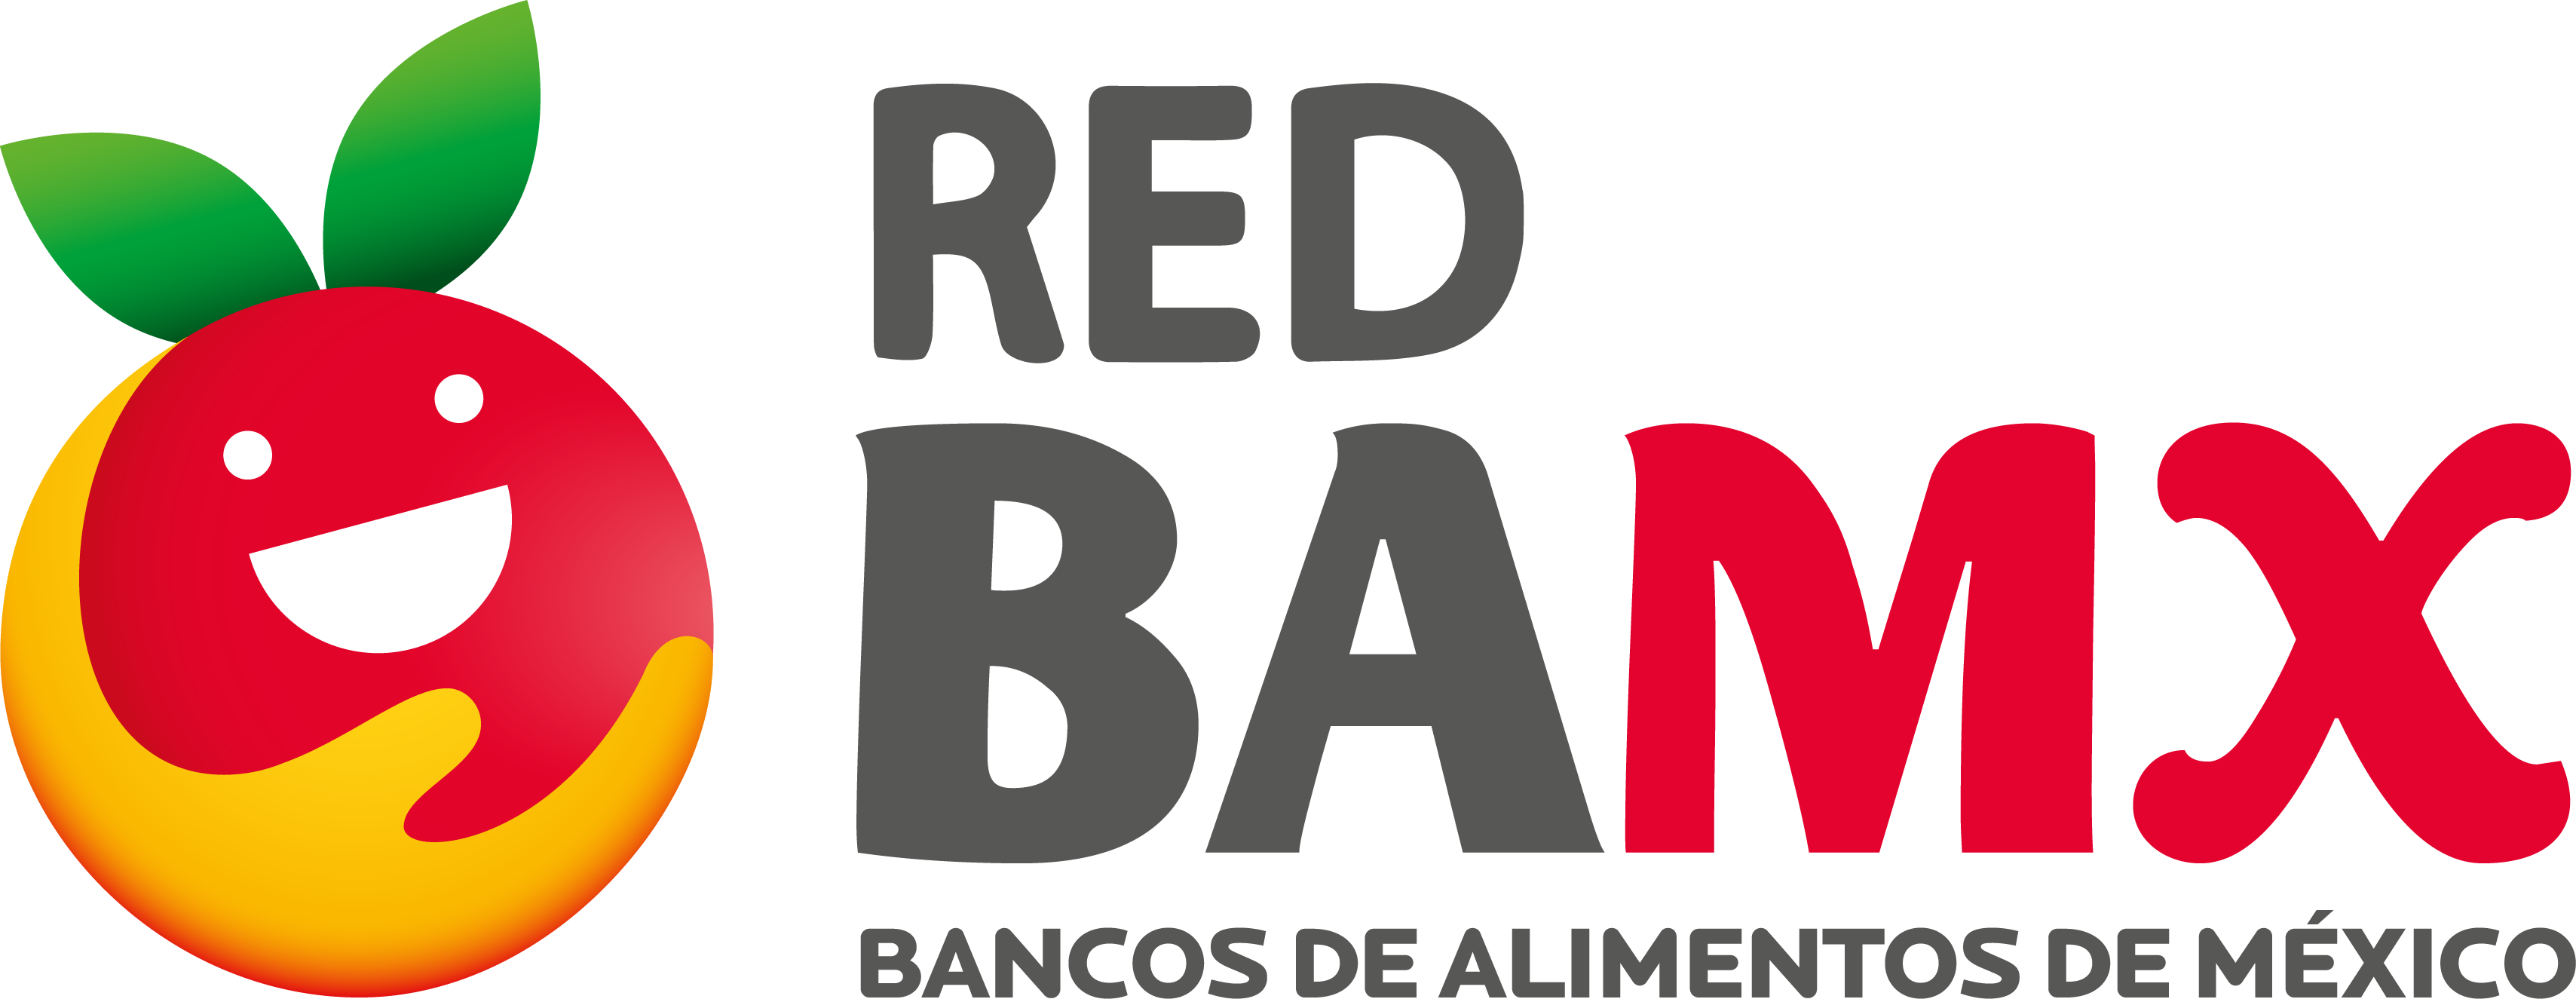 The logo for Bancos De Alimentos De Mexico.